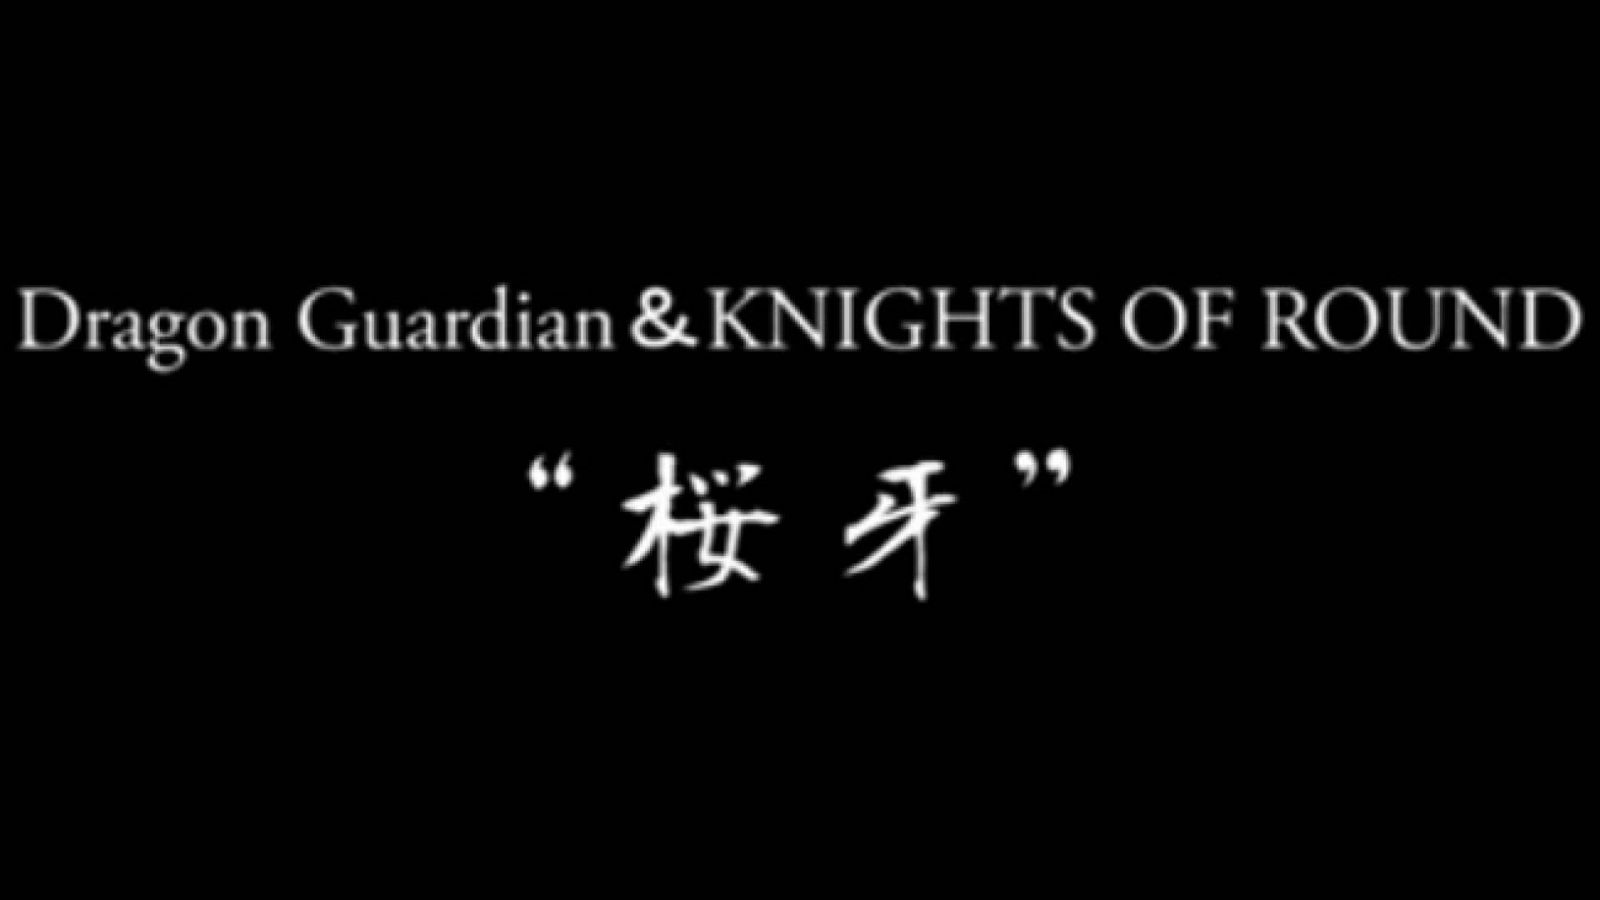 Ouga lanzará un nuevo álbum © Dragon Guardian, KNIGHTS OF ROUND